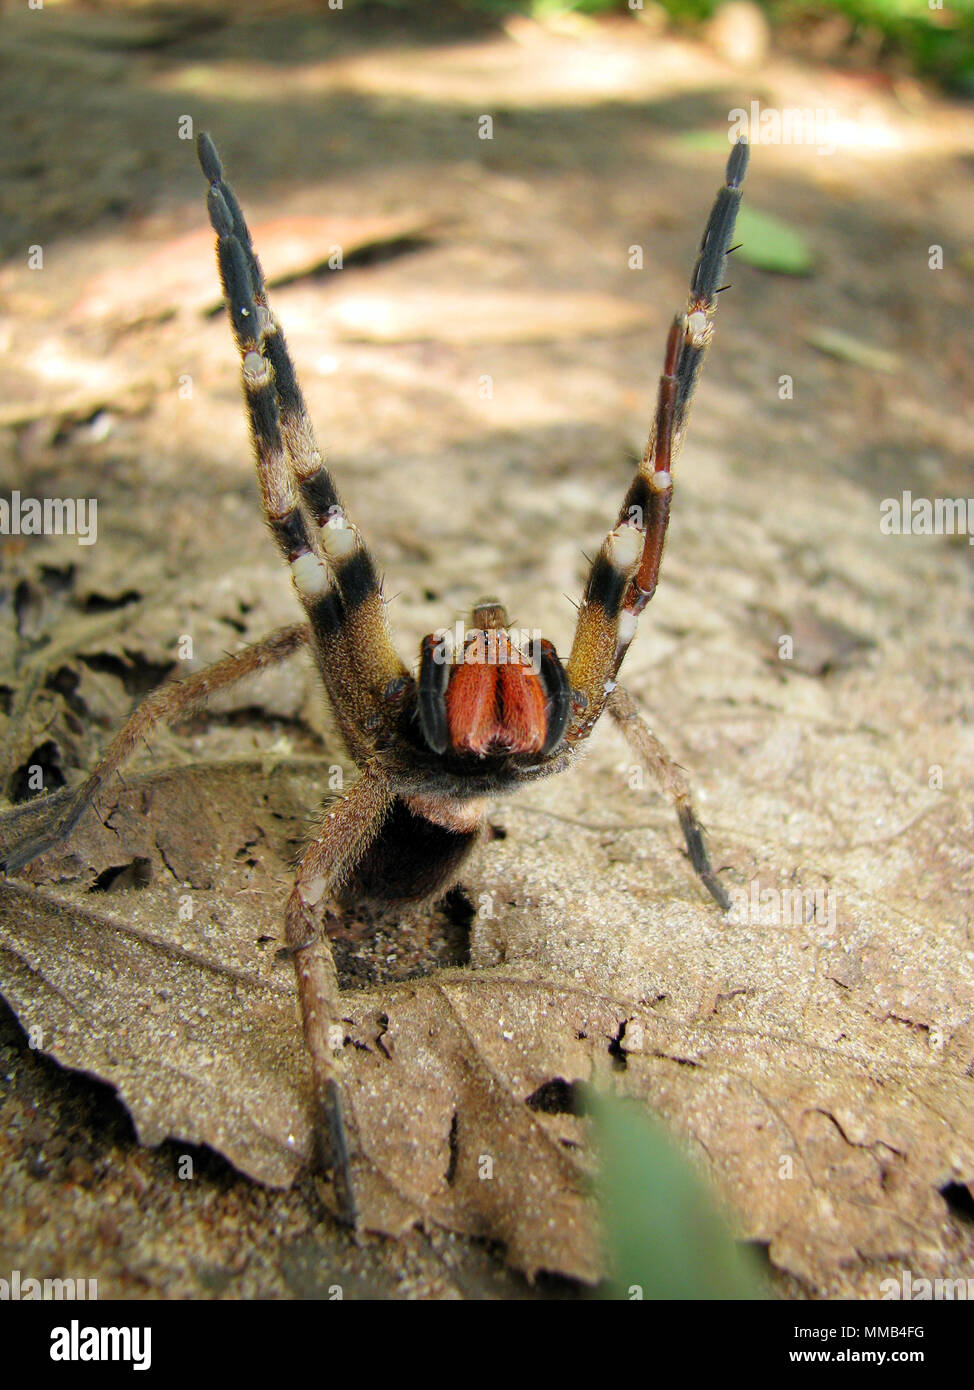 Brasiliano ragno errante (Phoneutria nigriventer) armati con display di minaccia, noto anche come aranha armadeira o banana spider. Foto Stock